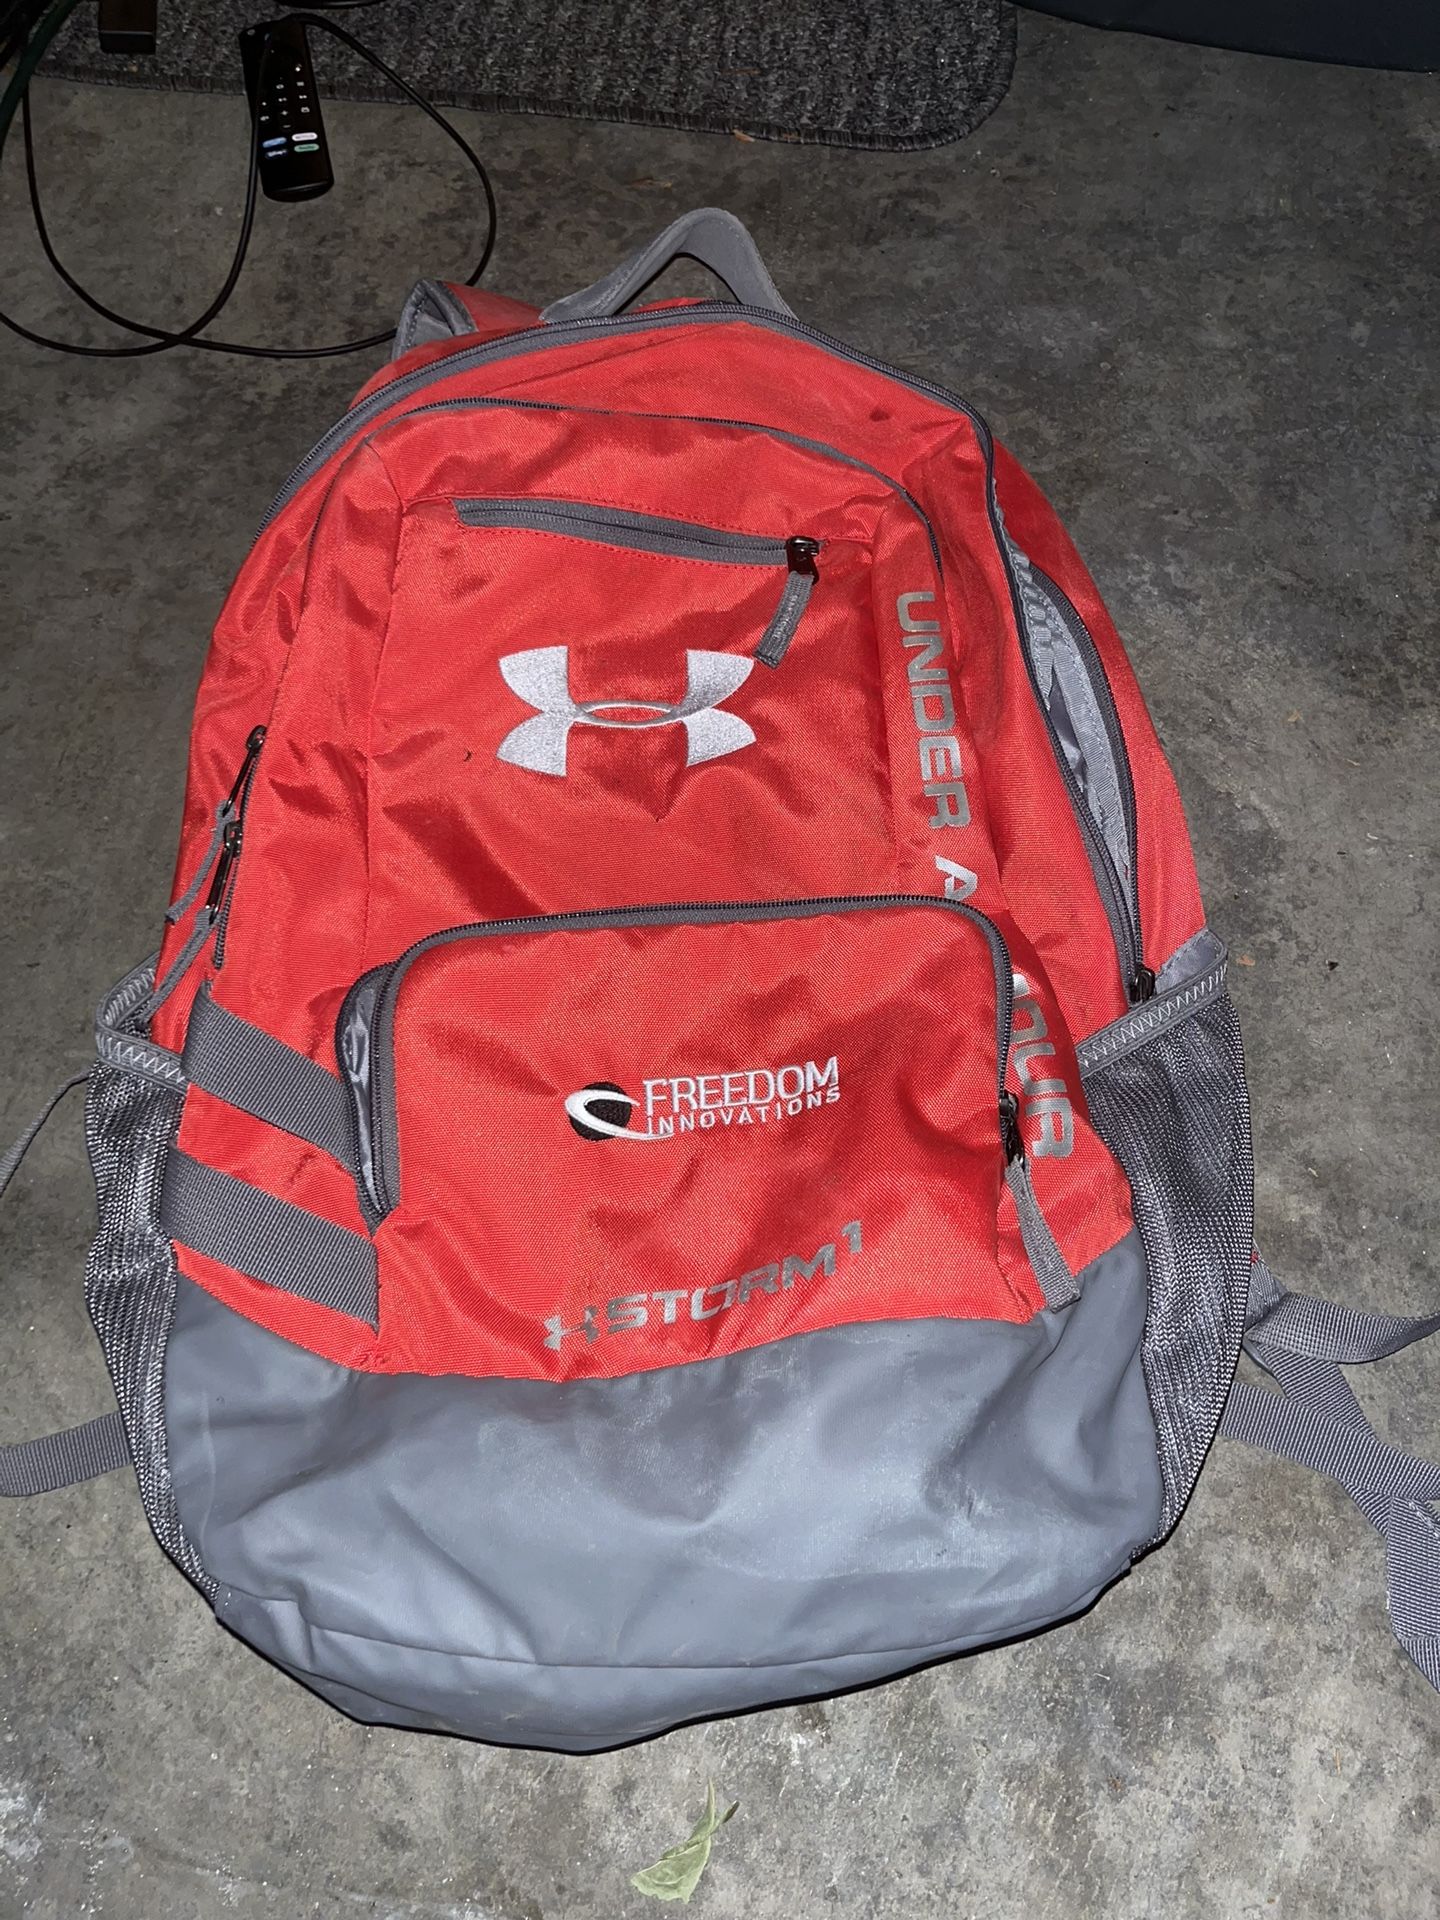 Under Armor Sport Backpack 